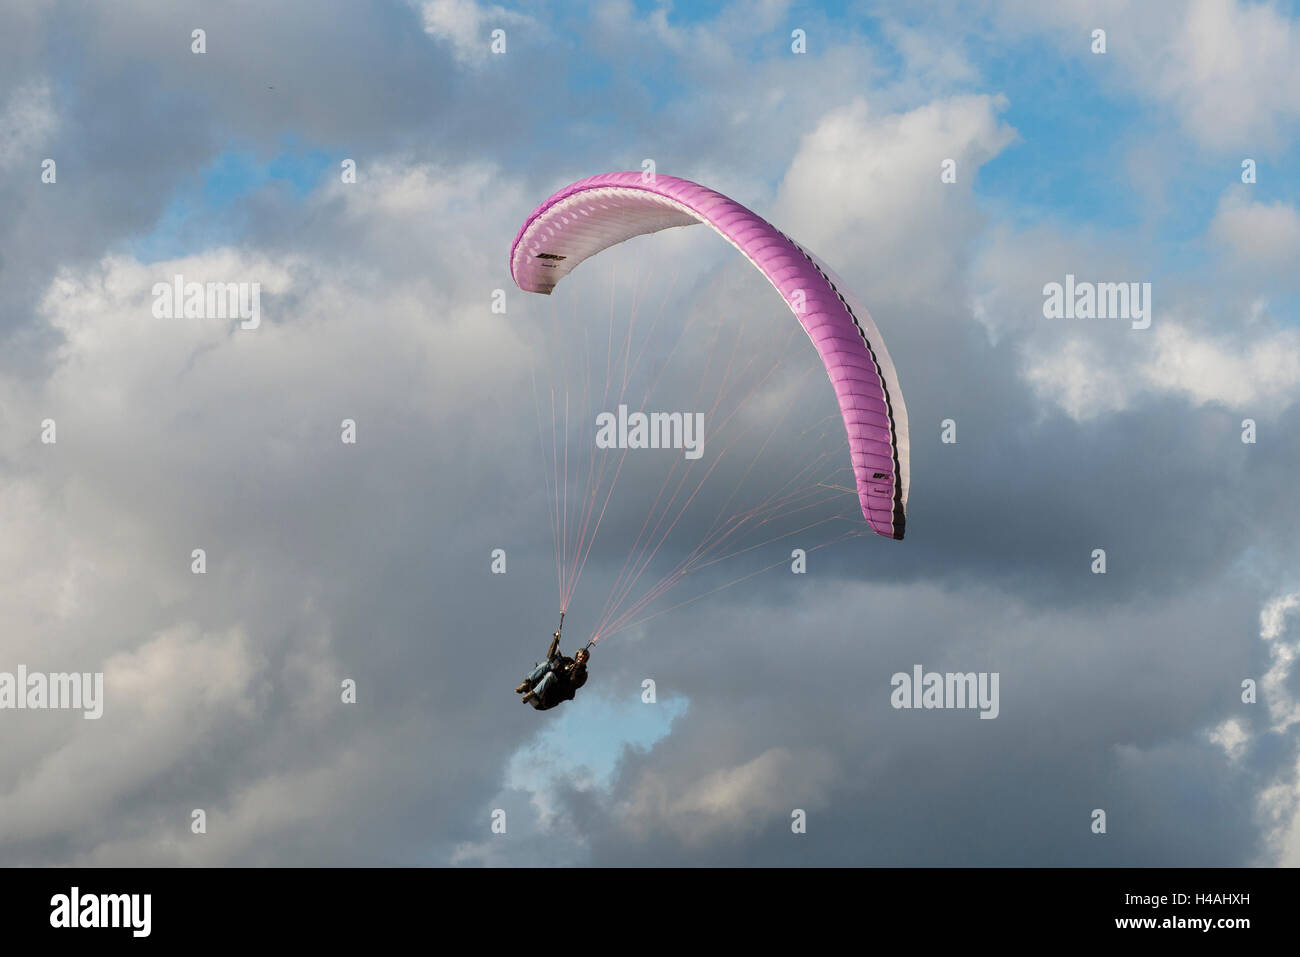 Parapente, Parachute, Andalousie, aviation, Algodonales, Olvera, nuages, photo aérienne, aviation, province de Cadix, Espagne Banque D'Images